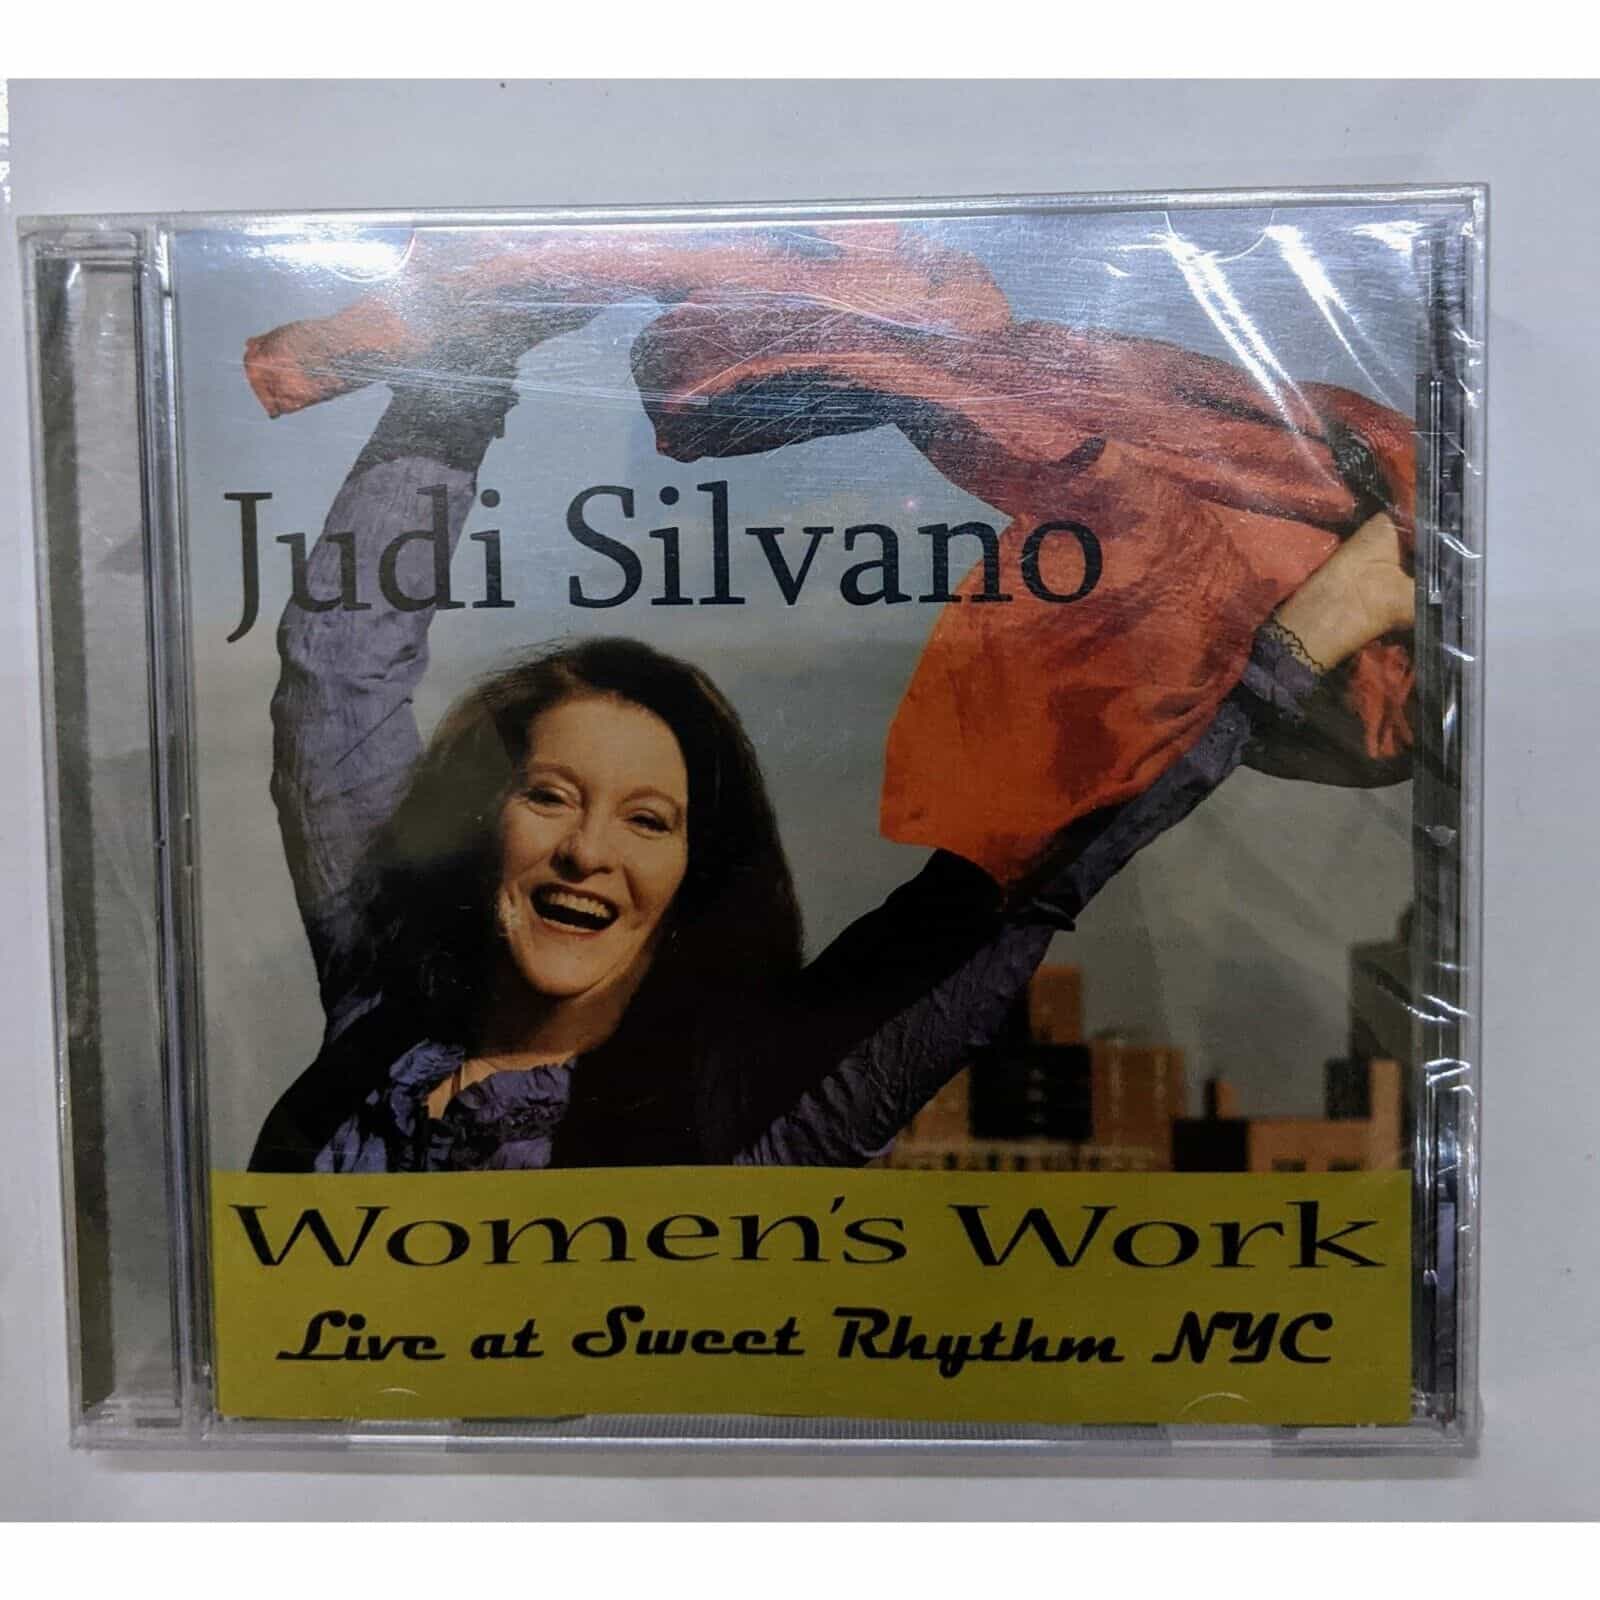 Women’s Work by Judi Silvano Music Album